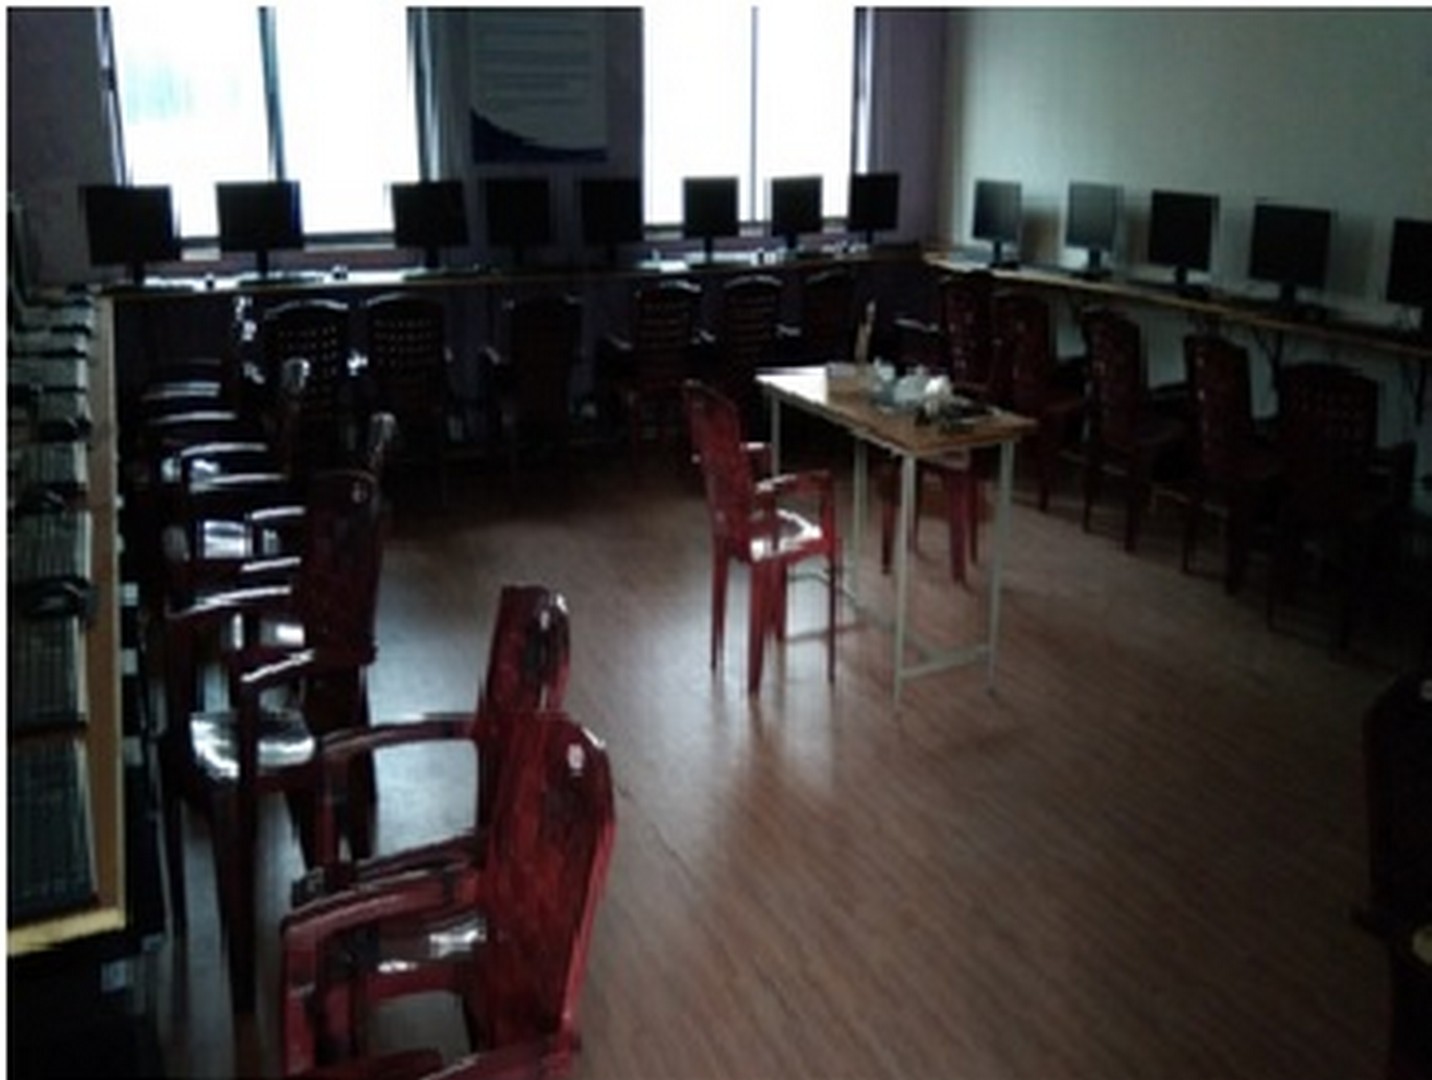 Computing Facilities at KPRIT